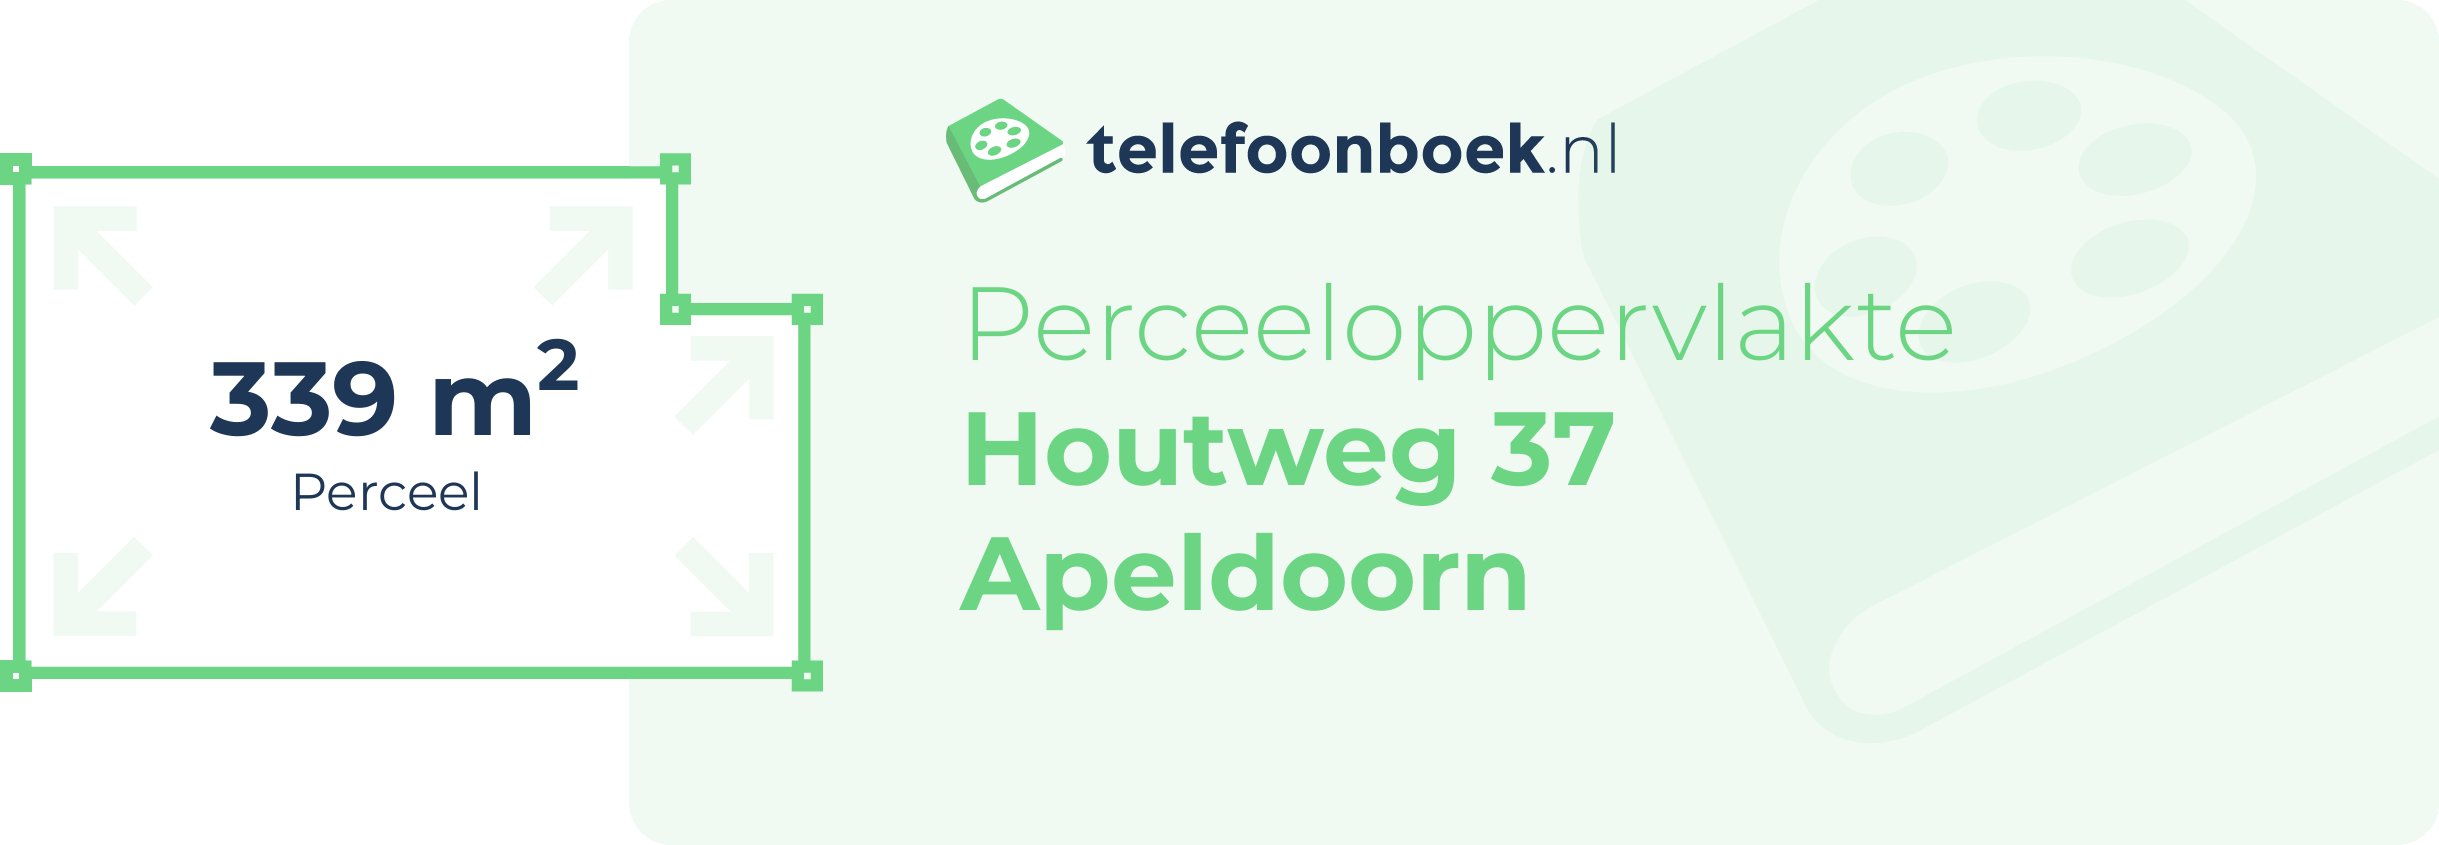 Perceeloppervlakte Houtweg 37 Apeldoorn